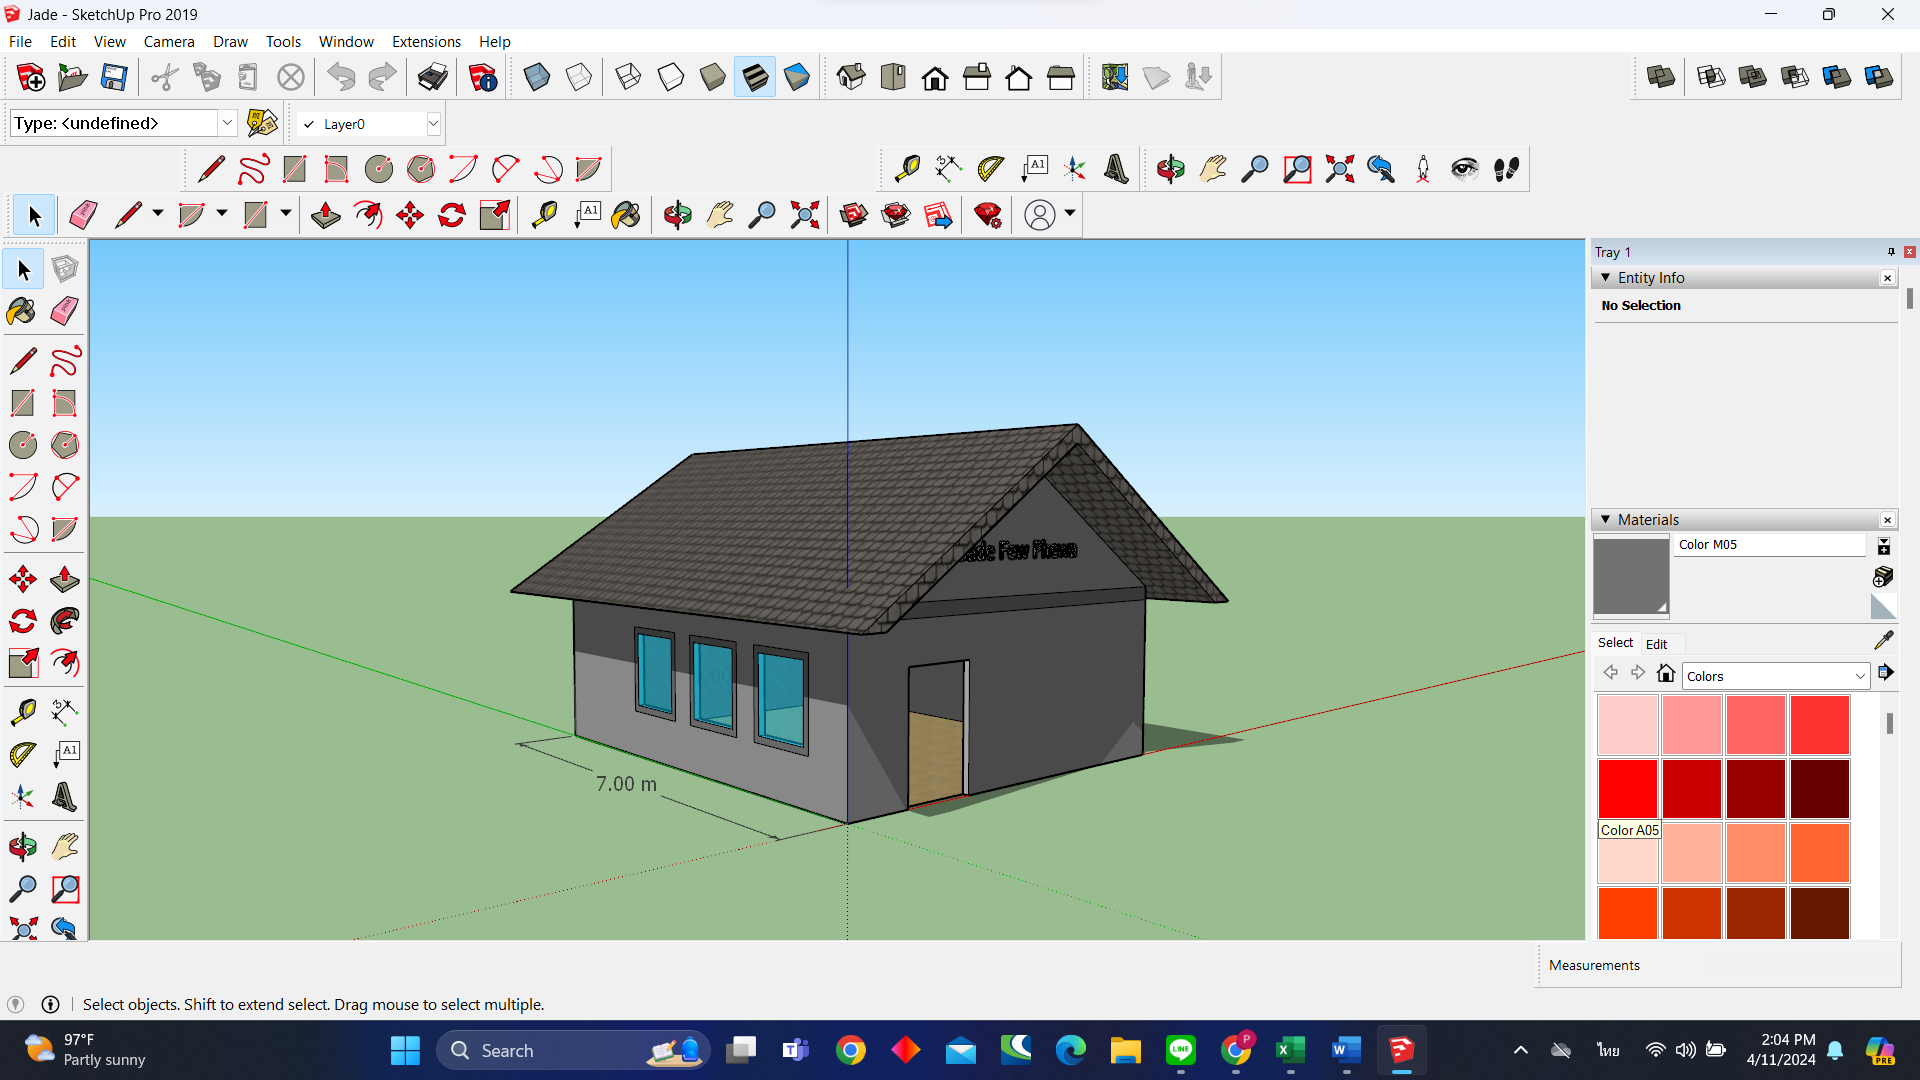 โครงการอบรมนิสิตหลักสูตรการเขียนแบบ 3D model ด้วยโปรแกรม SketchUp 